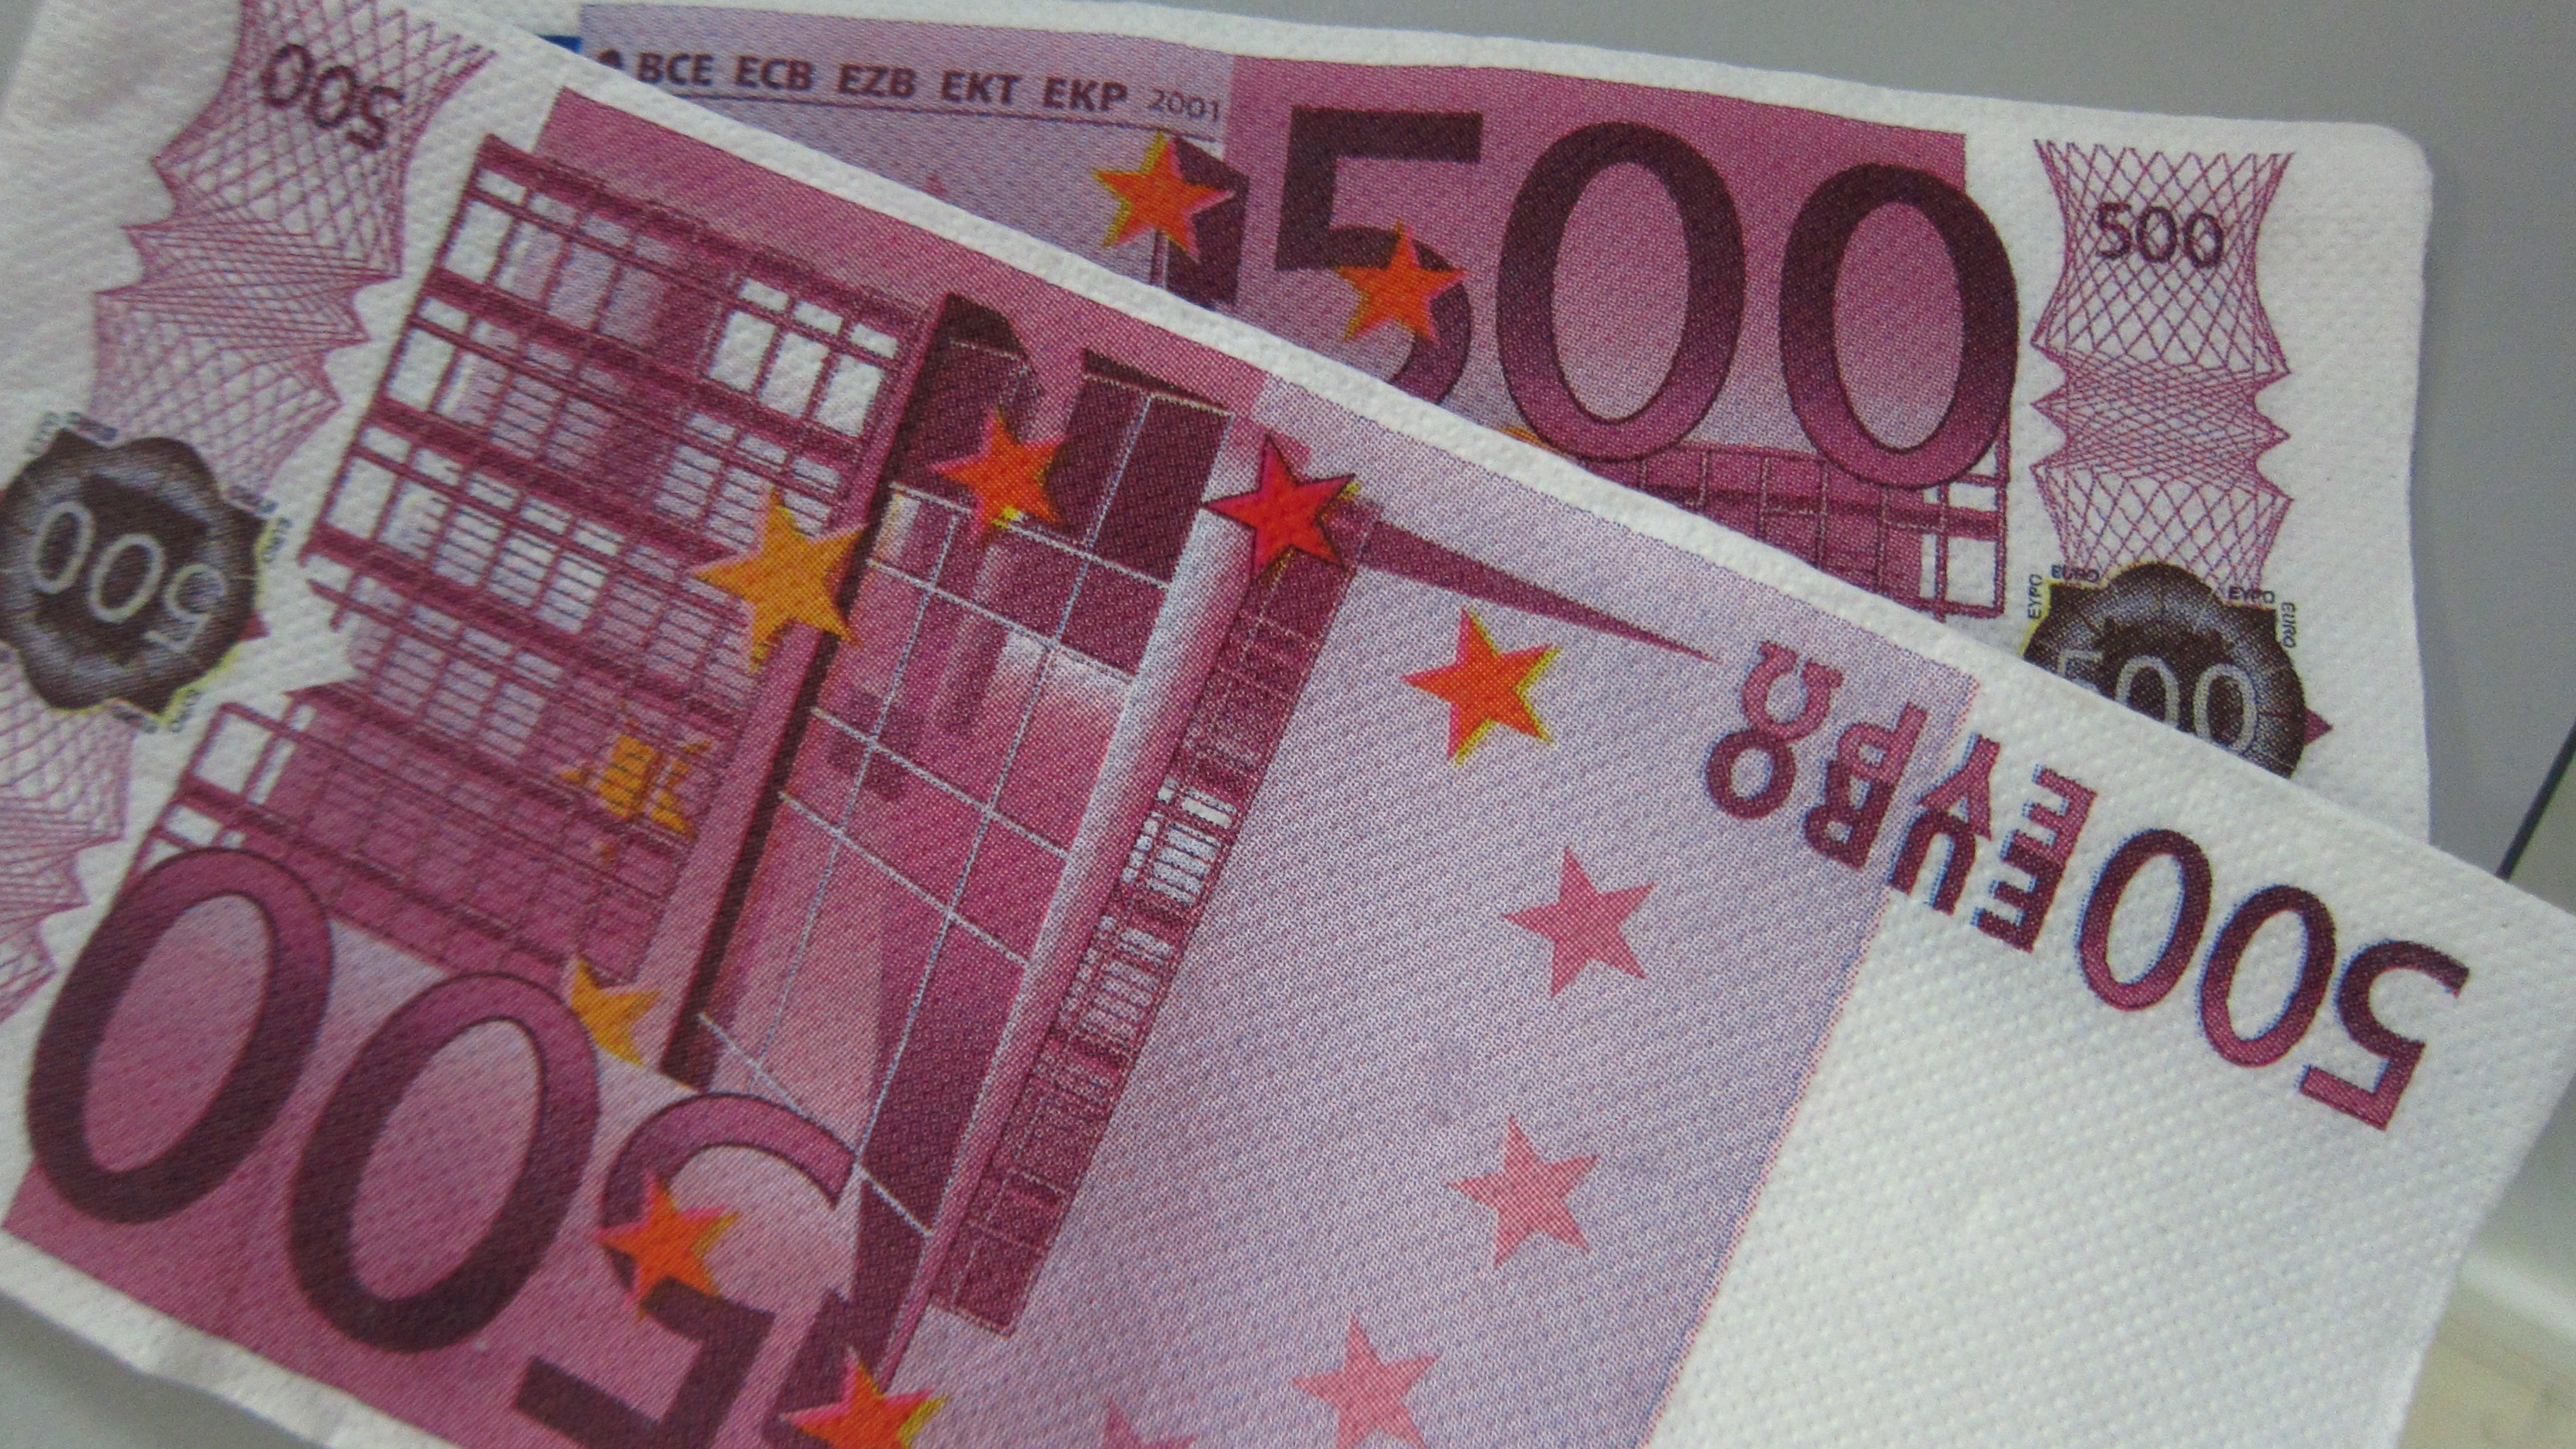 Cae el número de billetes de 500 euros